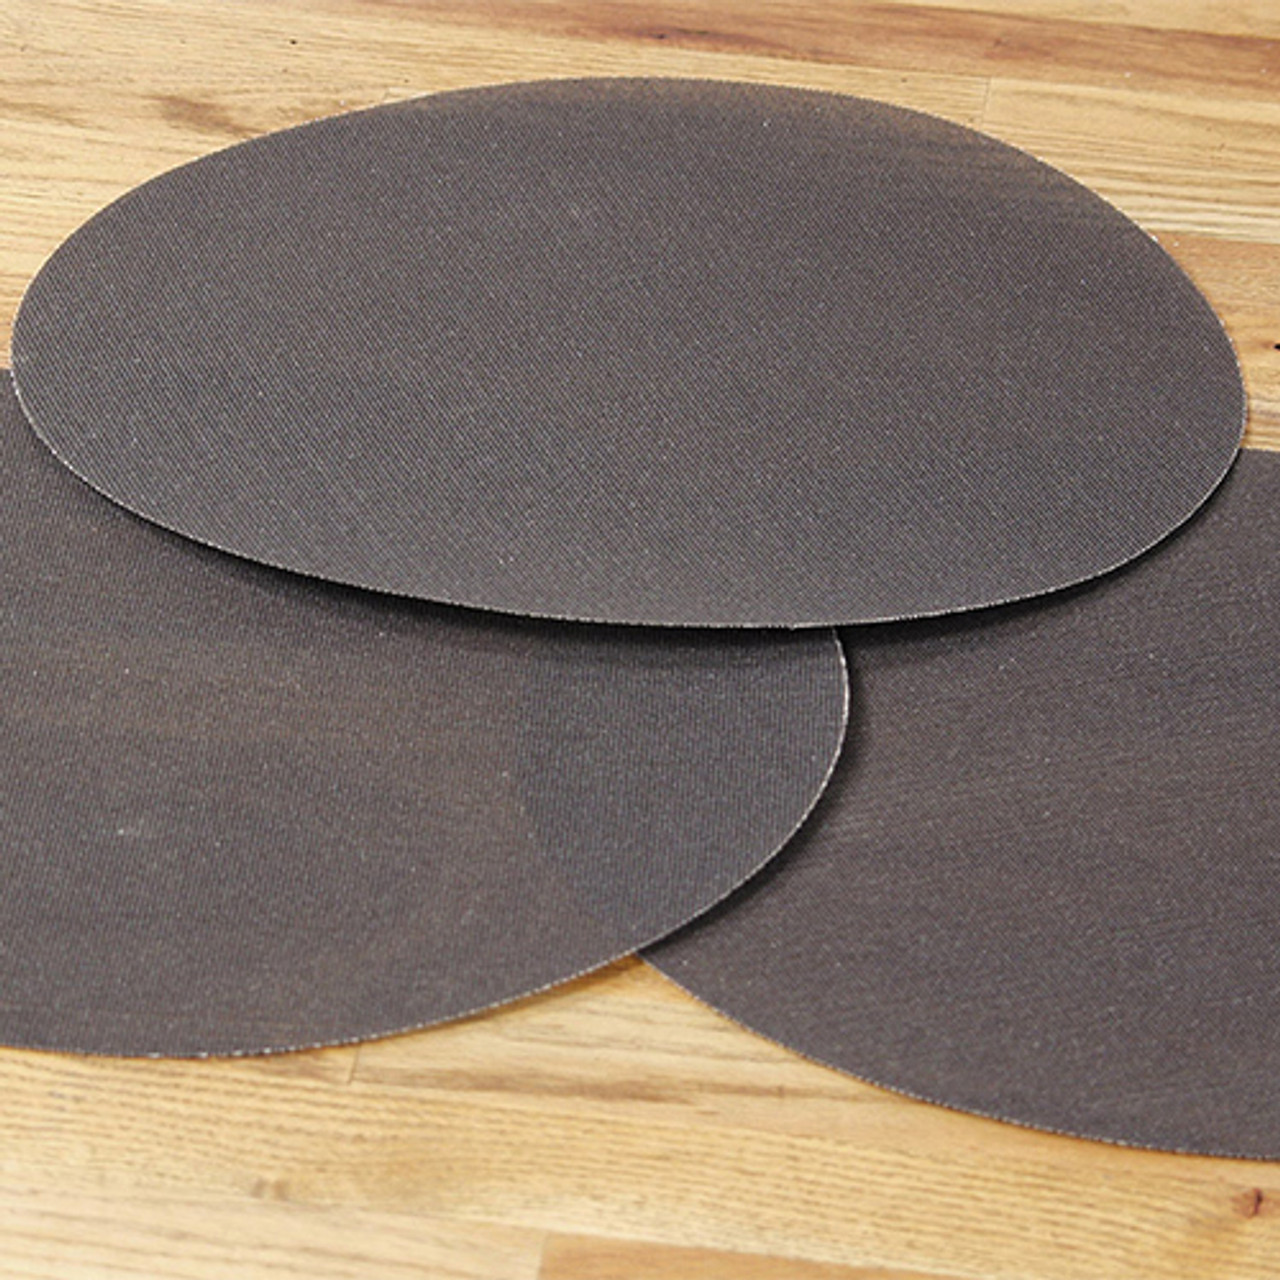 Klingspor Abrasives Floor Sanding, 20" Mesh Screen Disc, 220 Grit